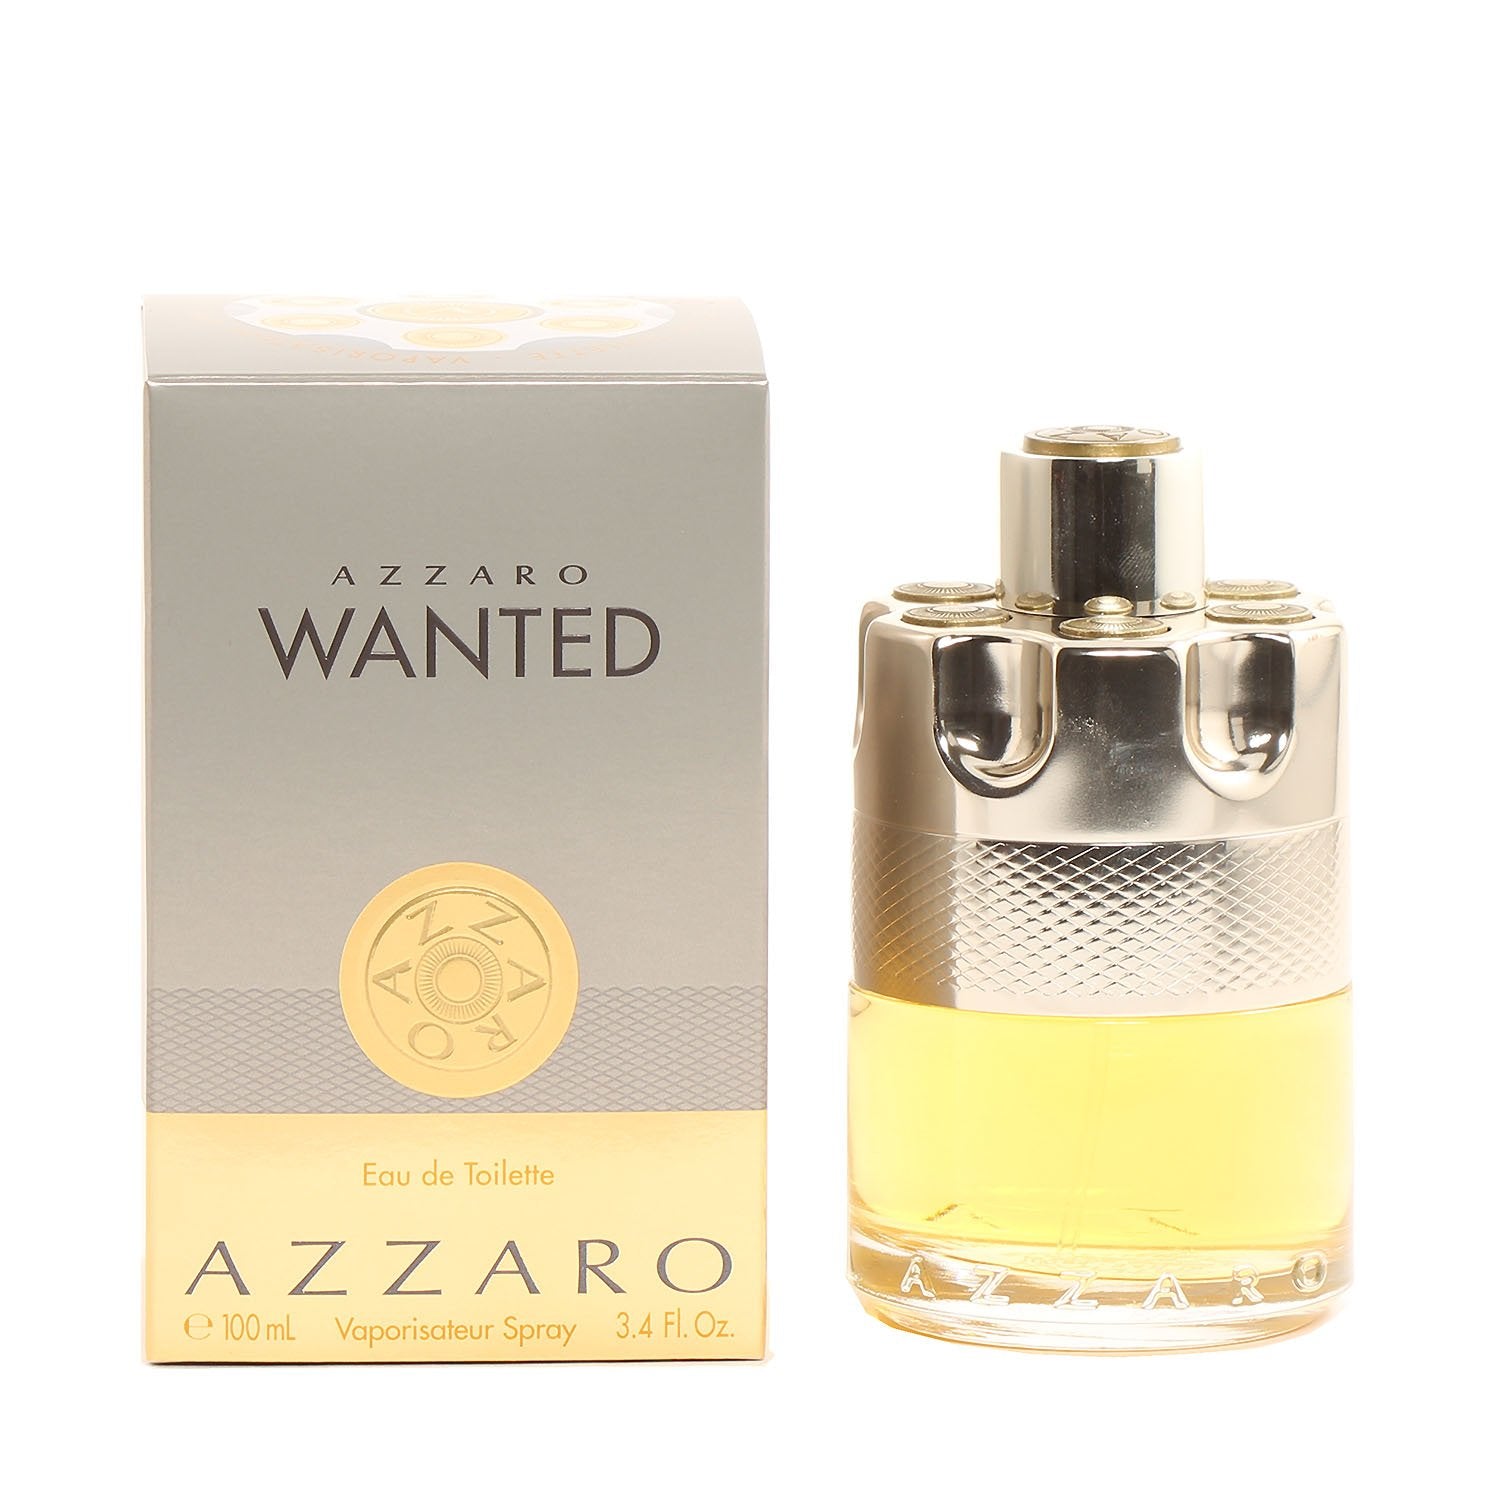 Flacons vaporisateurs spray parfum eau de toilette Azzaro Wanted